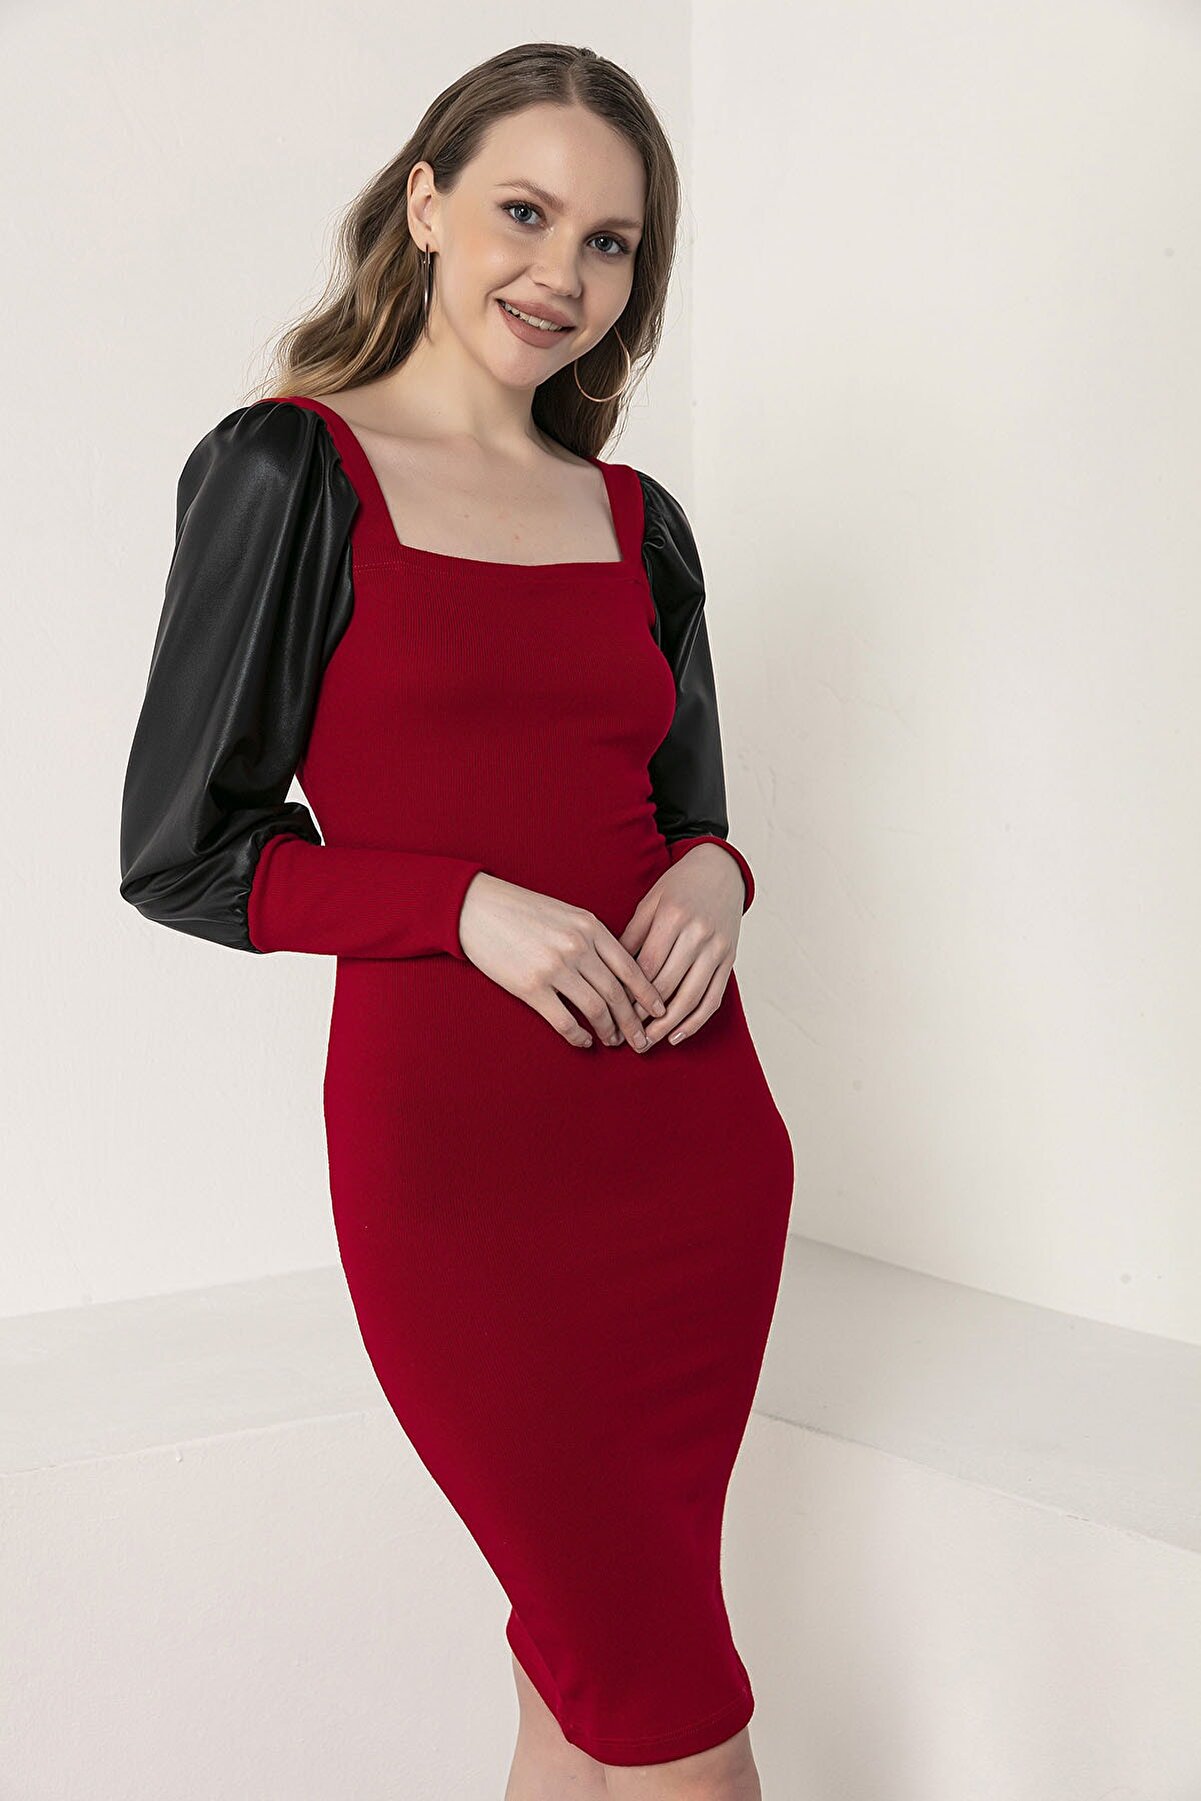 Kadın Modası Kadın Kırmızı Kare Yaka Prenses Kolu Deri Garnili Akrilik Kalem Elbise